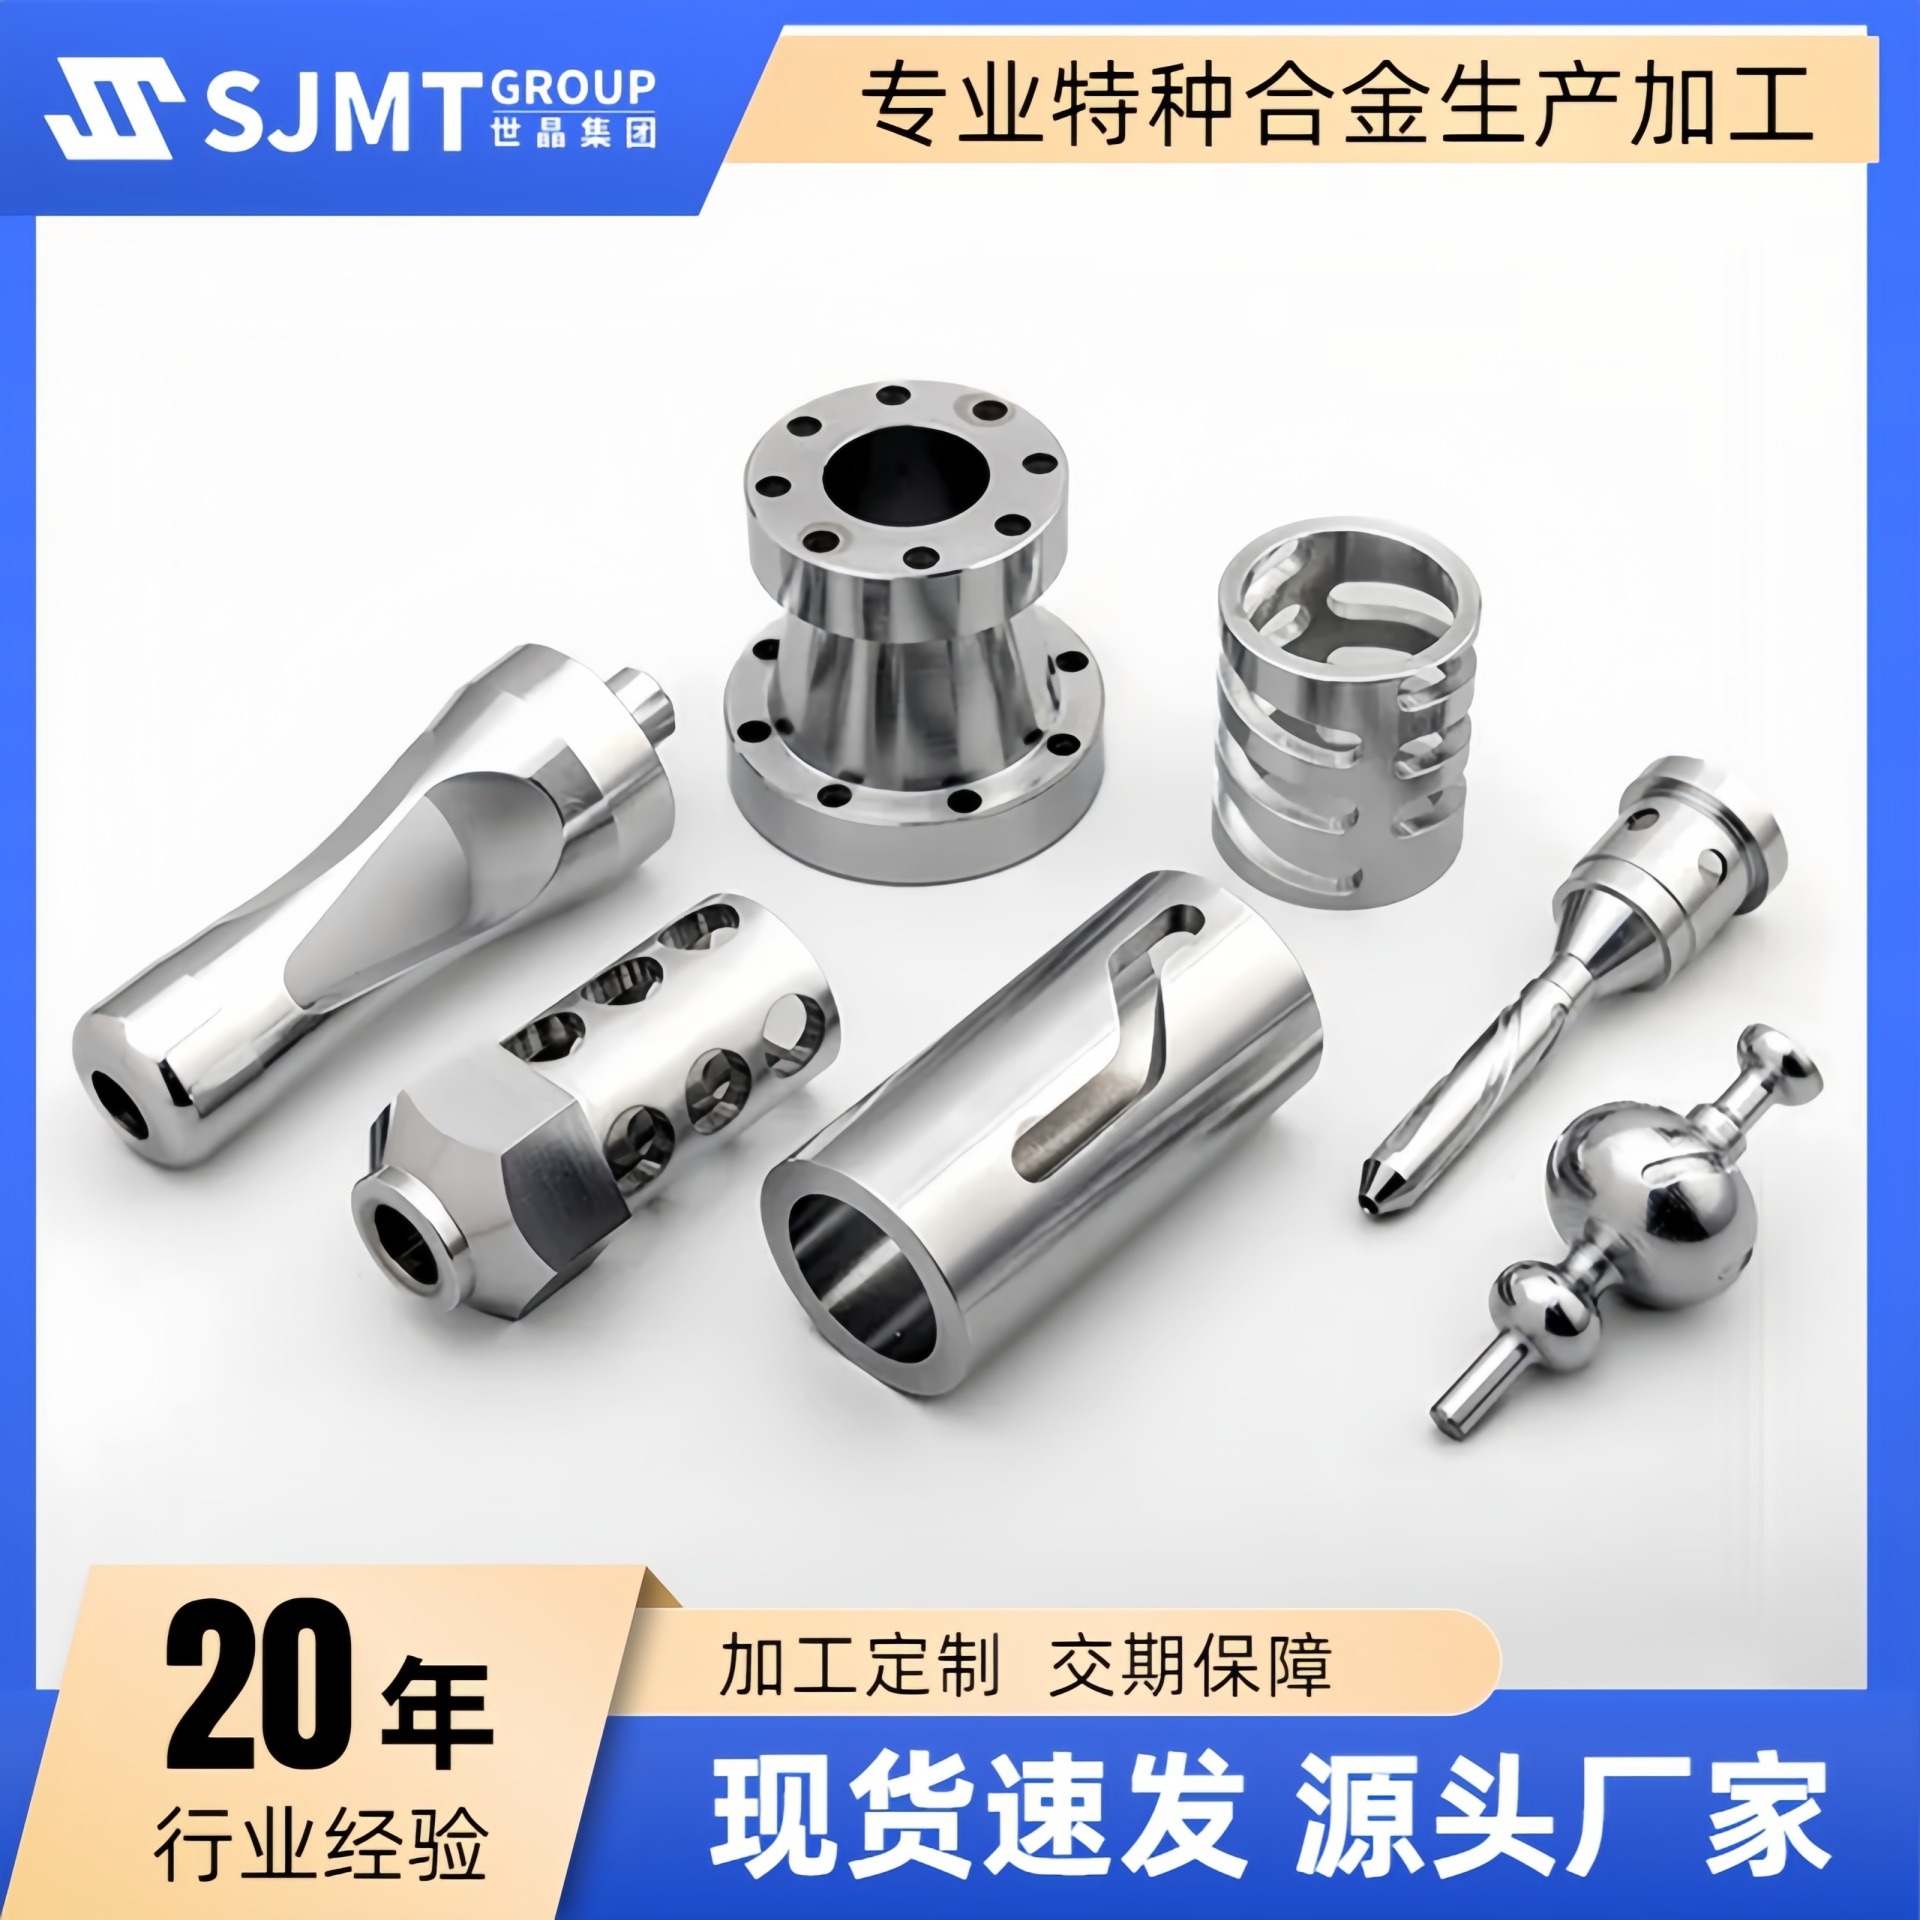 上海世晶金属厂家 供应6061-T651铝管 高强度6061铝合金管 加工不变形